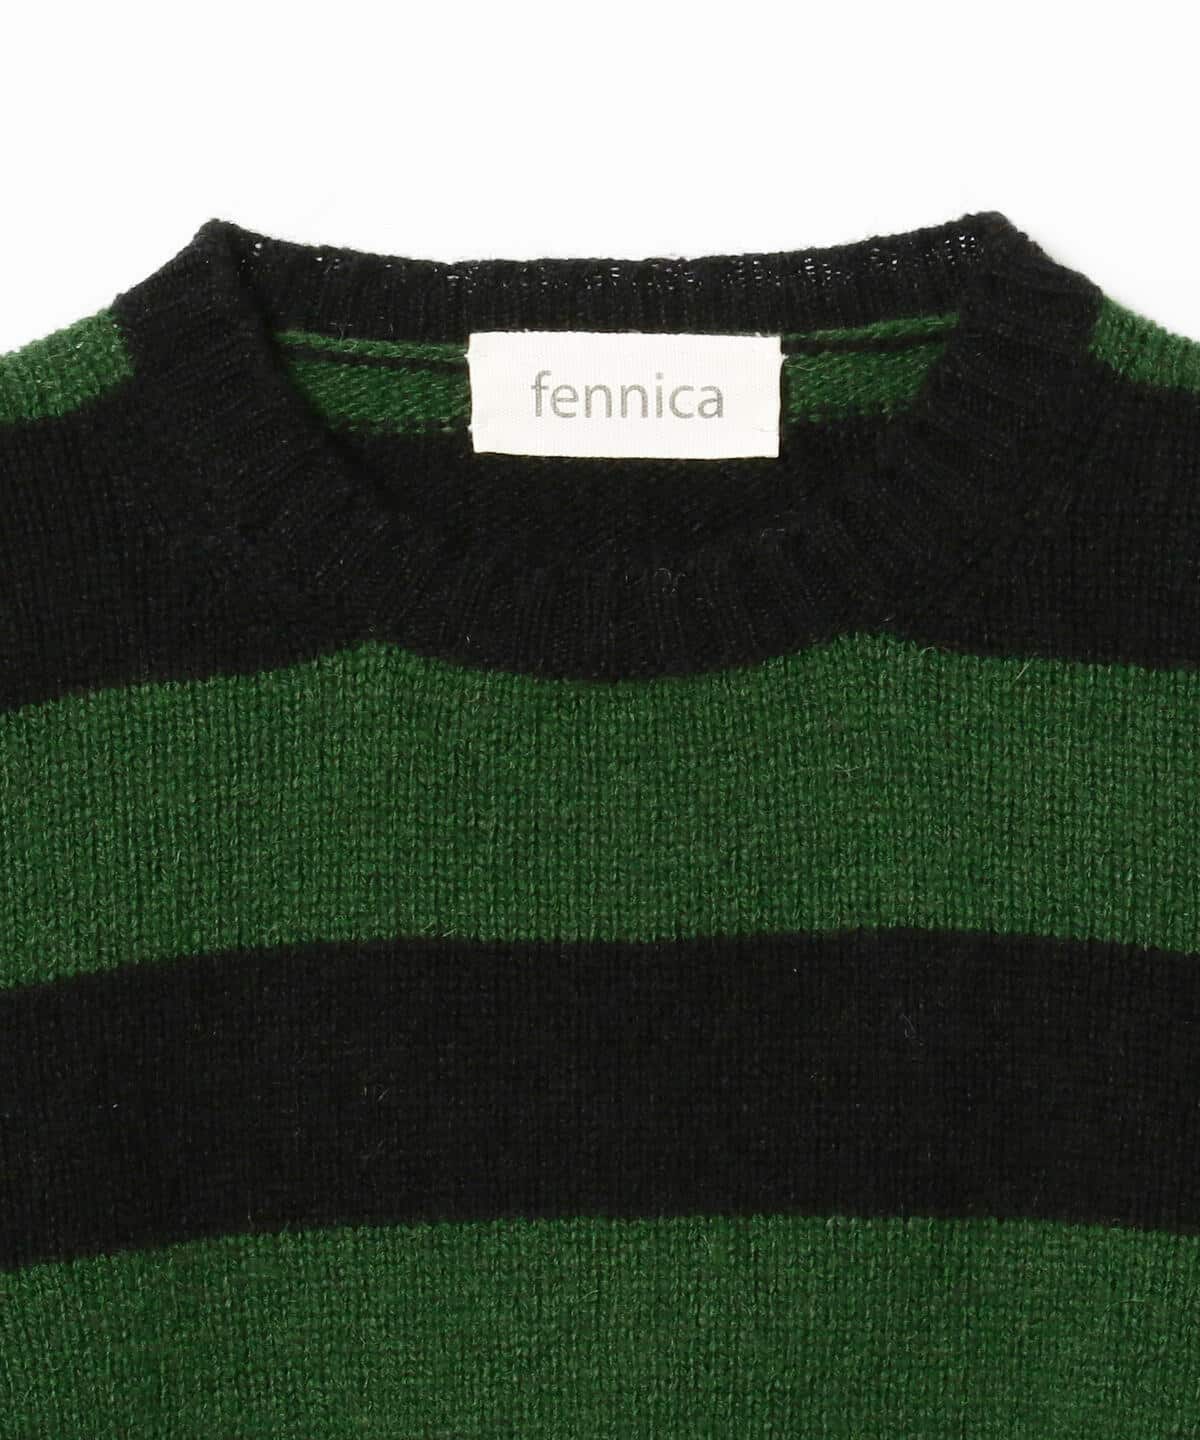 fennica（フェニカ）〈UNISEX〉Jamieson's Knitwear × fennica / 別注